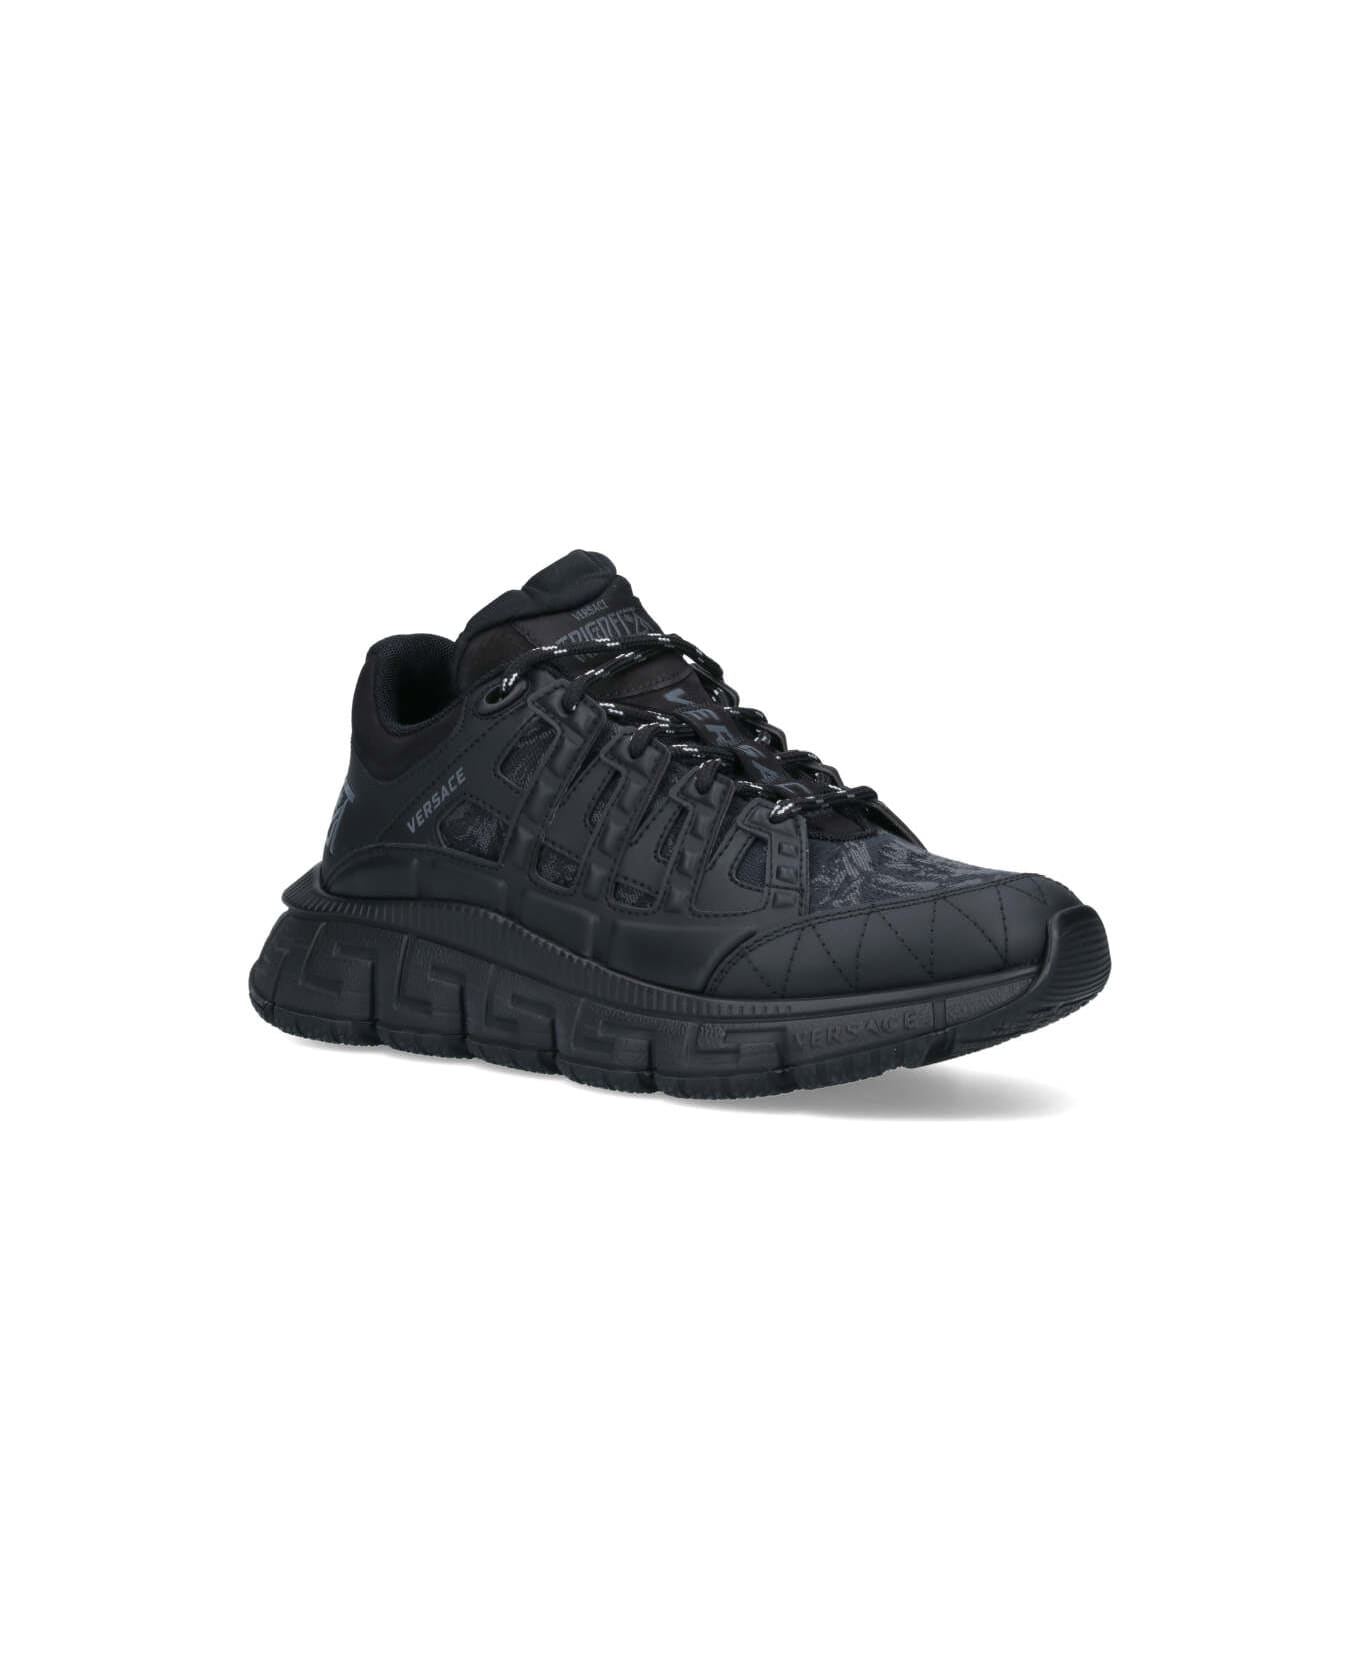 Versace Black Fabric Blend Sneakers - Black